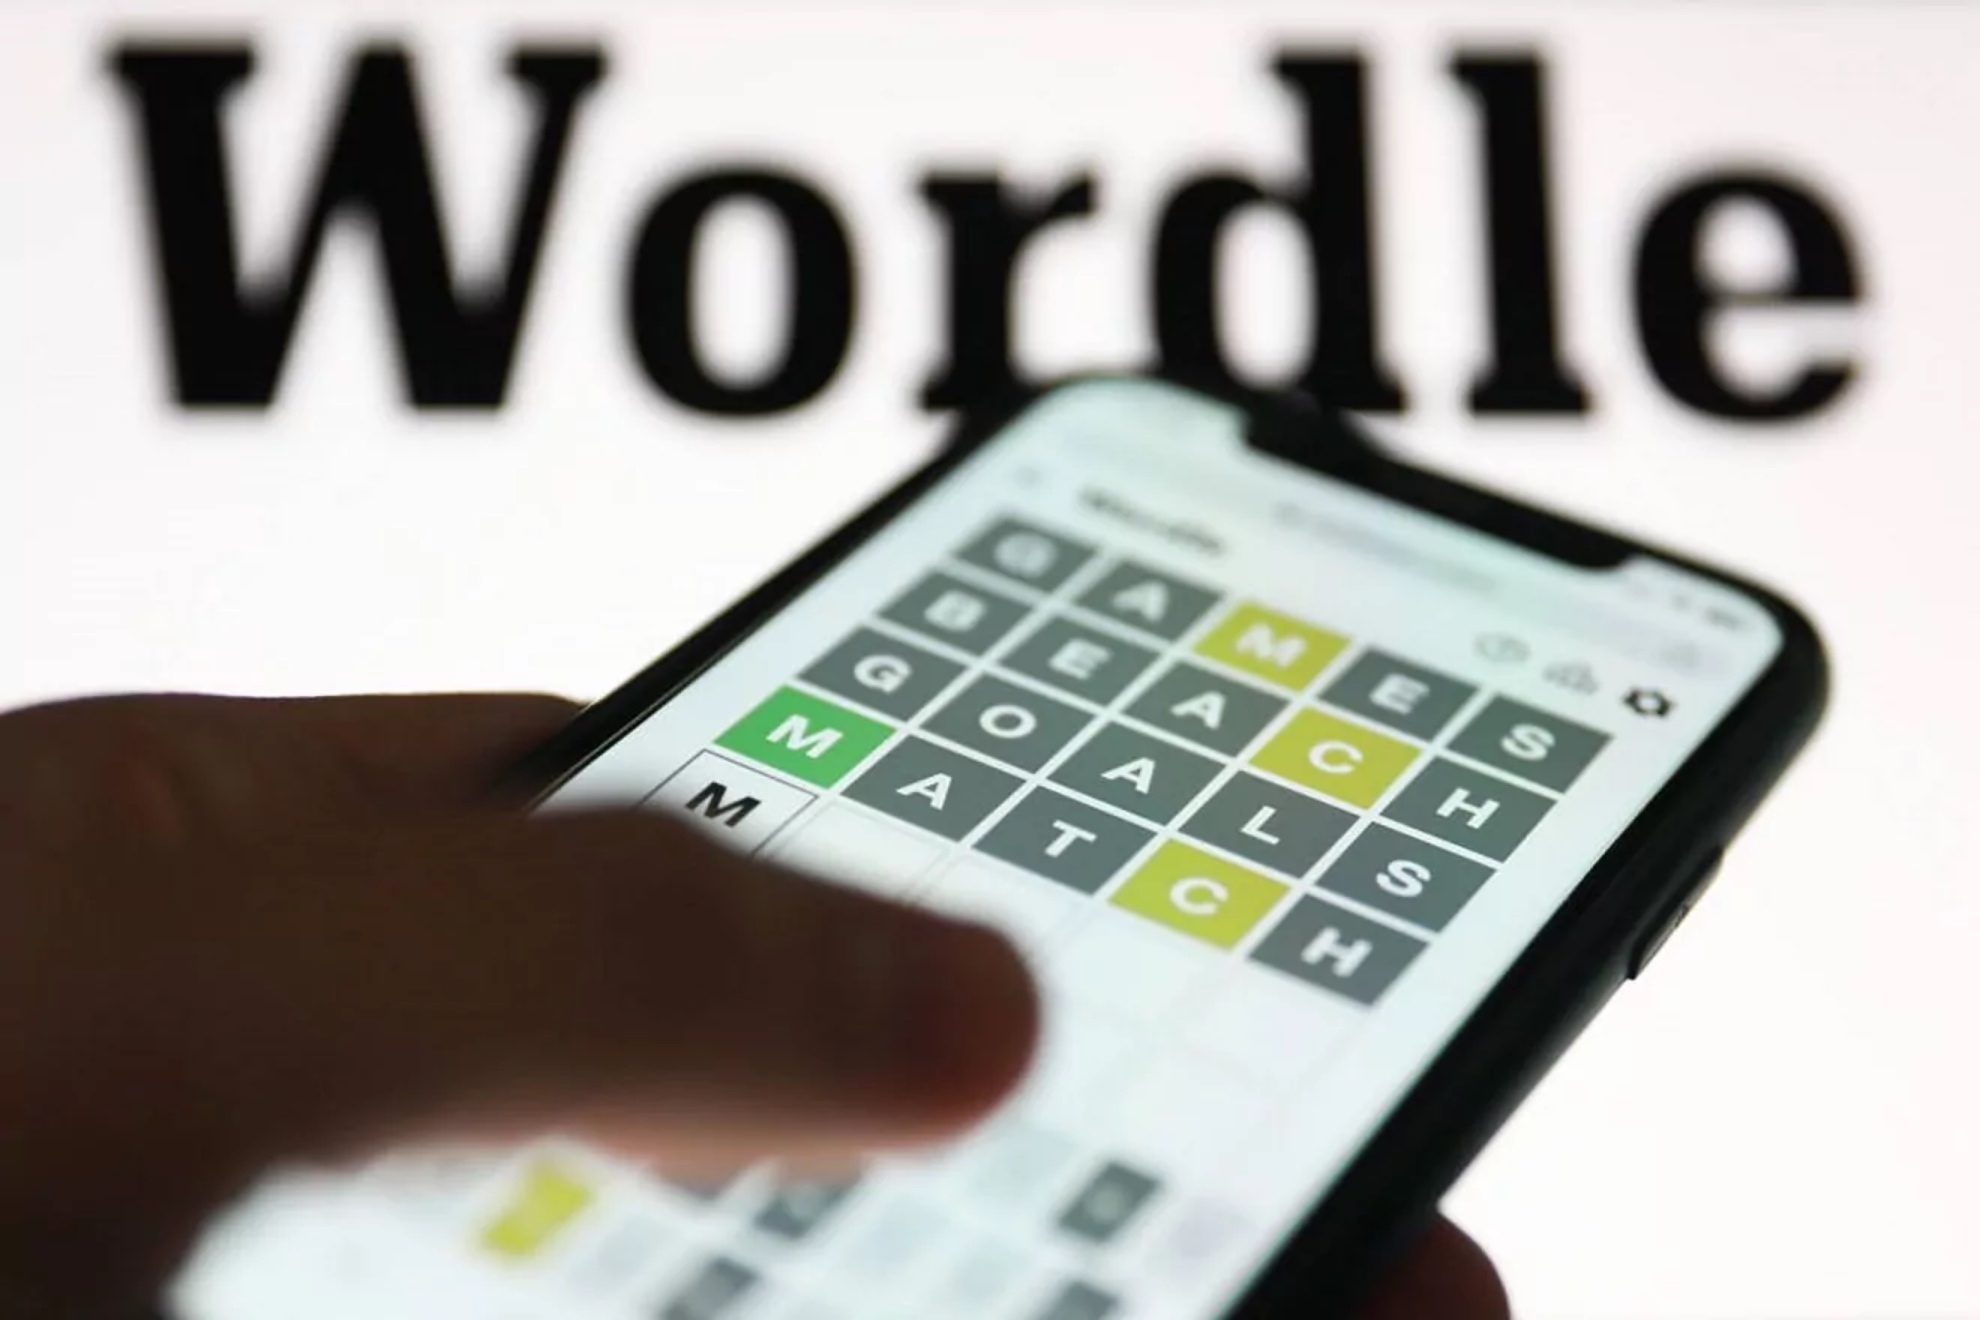 Wordle espaol hoy, 13 de abril: normal, tildes y cientfico | Soluciones y pistas para adivinar la palabra